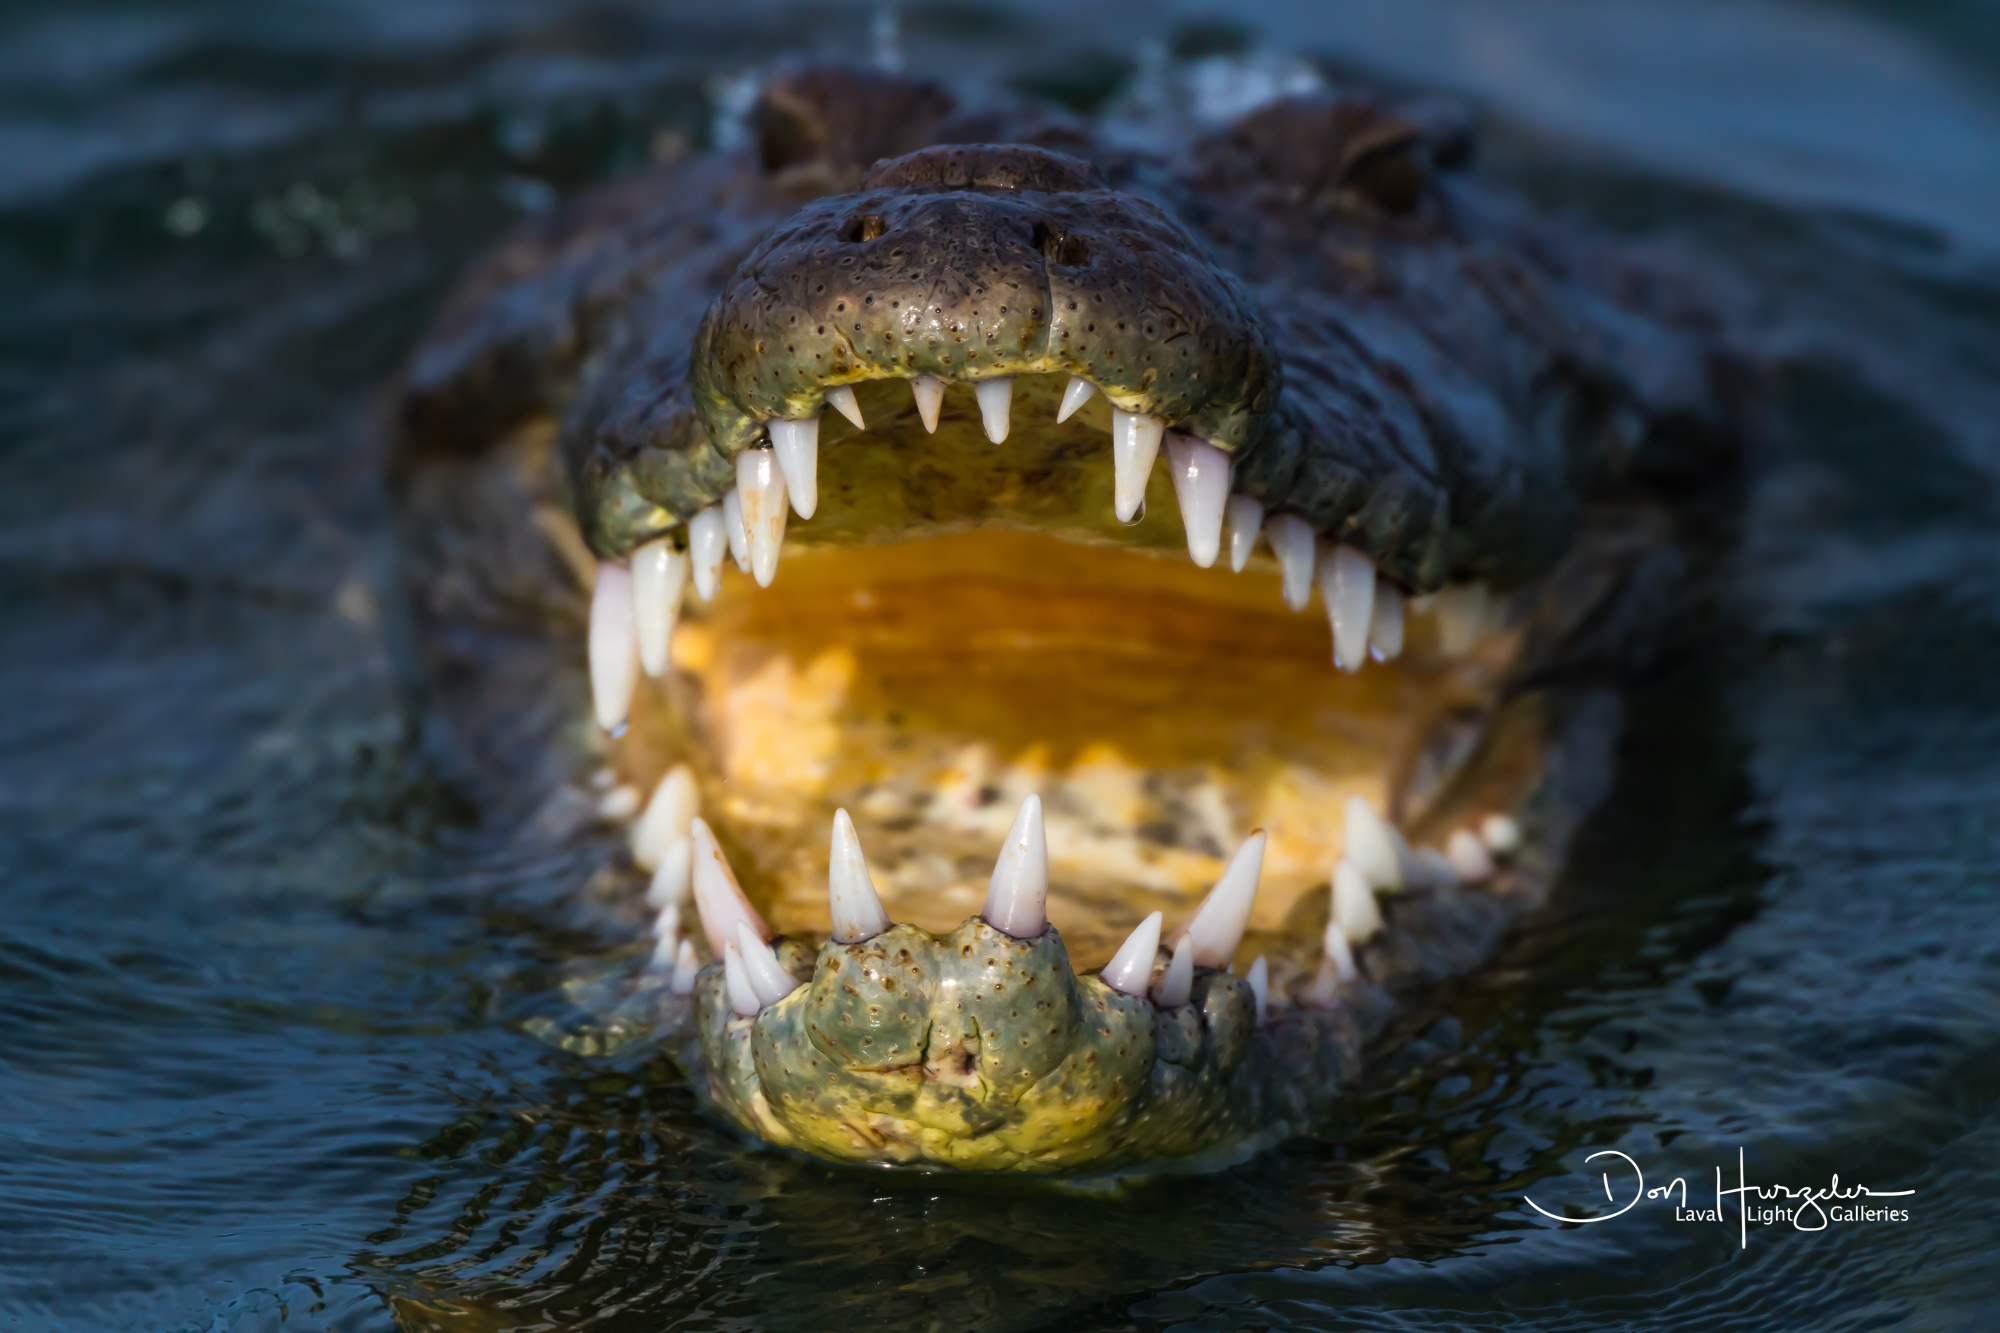 Charging salt water crocodile...Banco Chinchirro, Mexico.